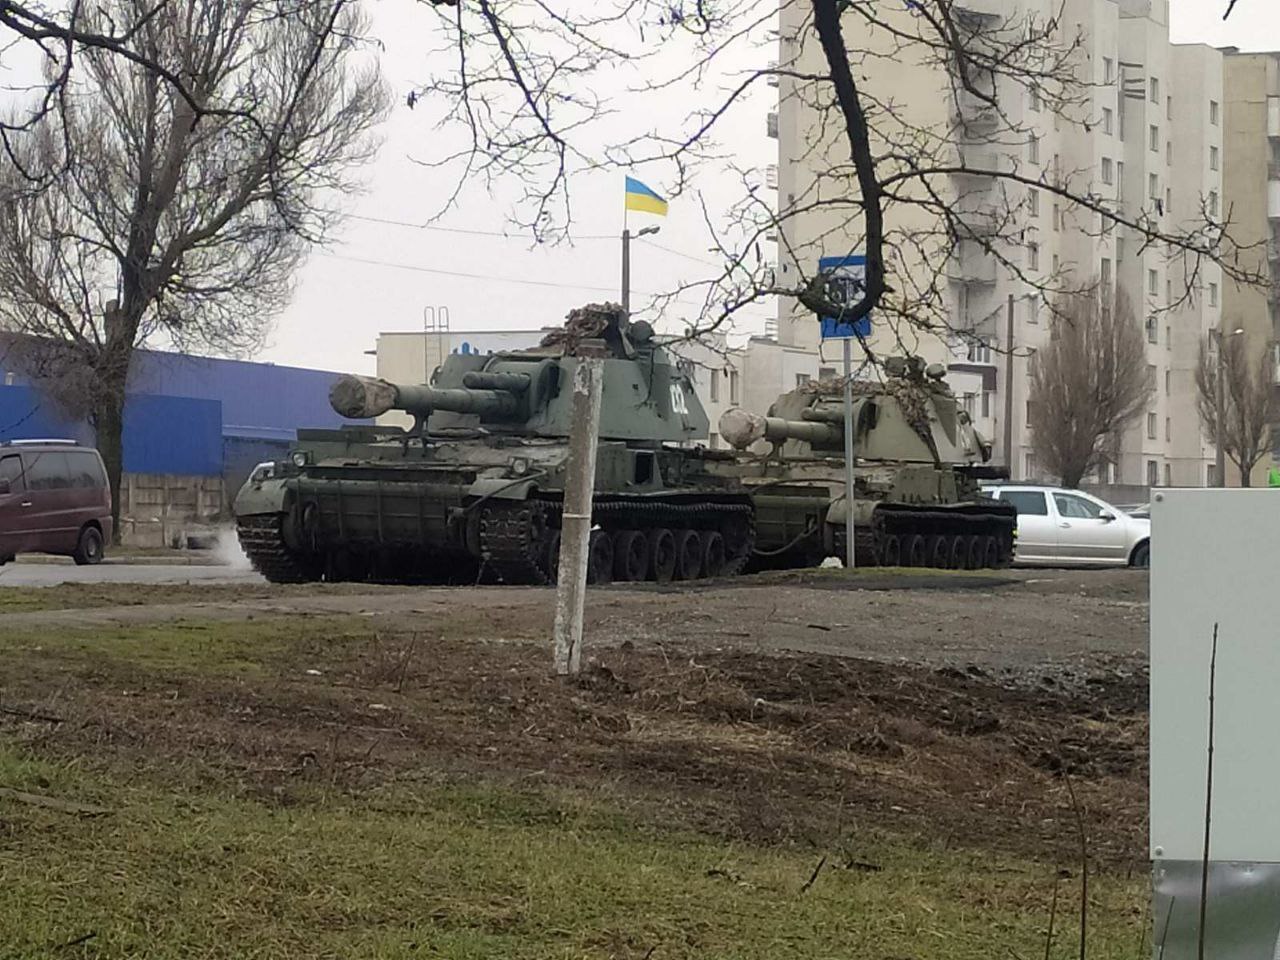 Ουκρανία:  Σκληρές μάχες στη Μαριούπολη - Ουκρανικά άρματα στην είσοδο της πόλης